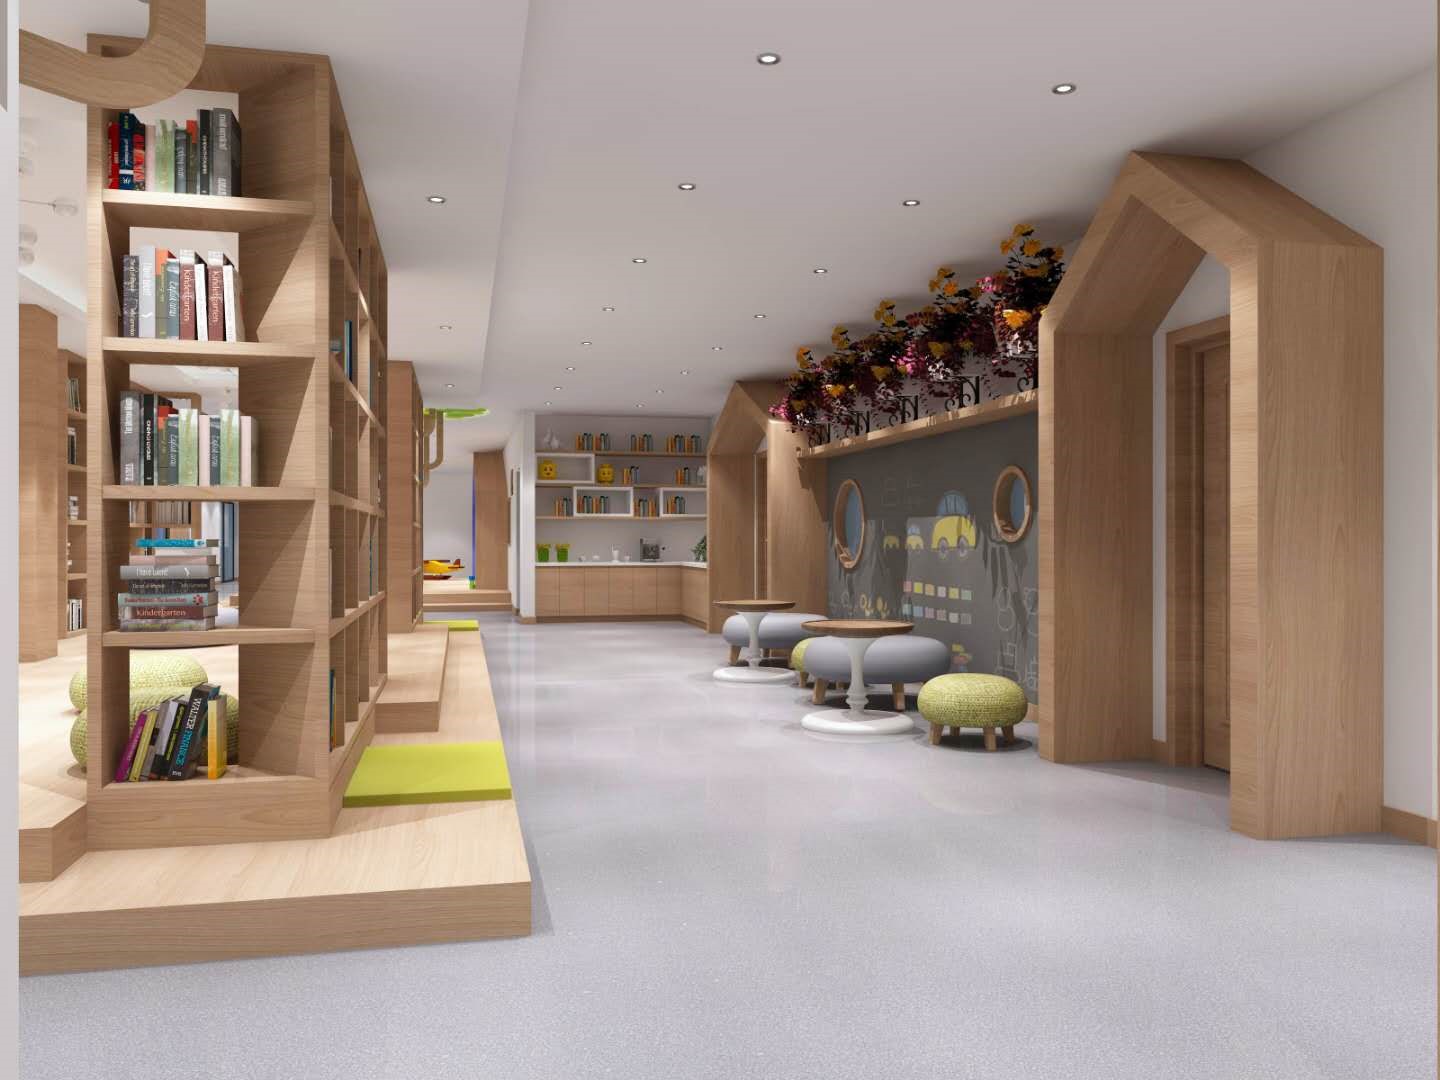 浙江宝贝世家幼儿园设计1500㎡  西安言筑商业空间设计